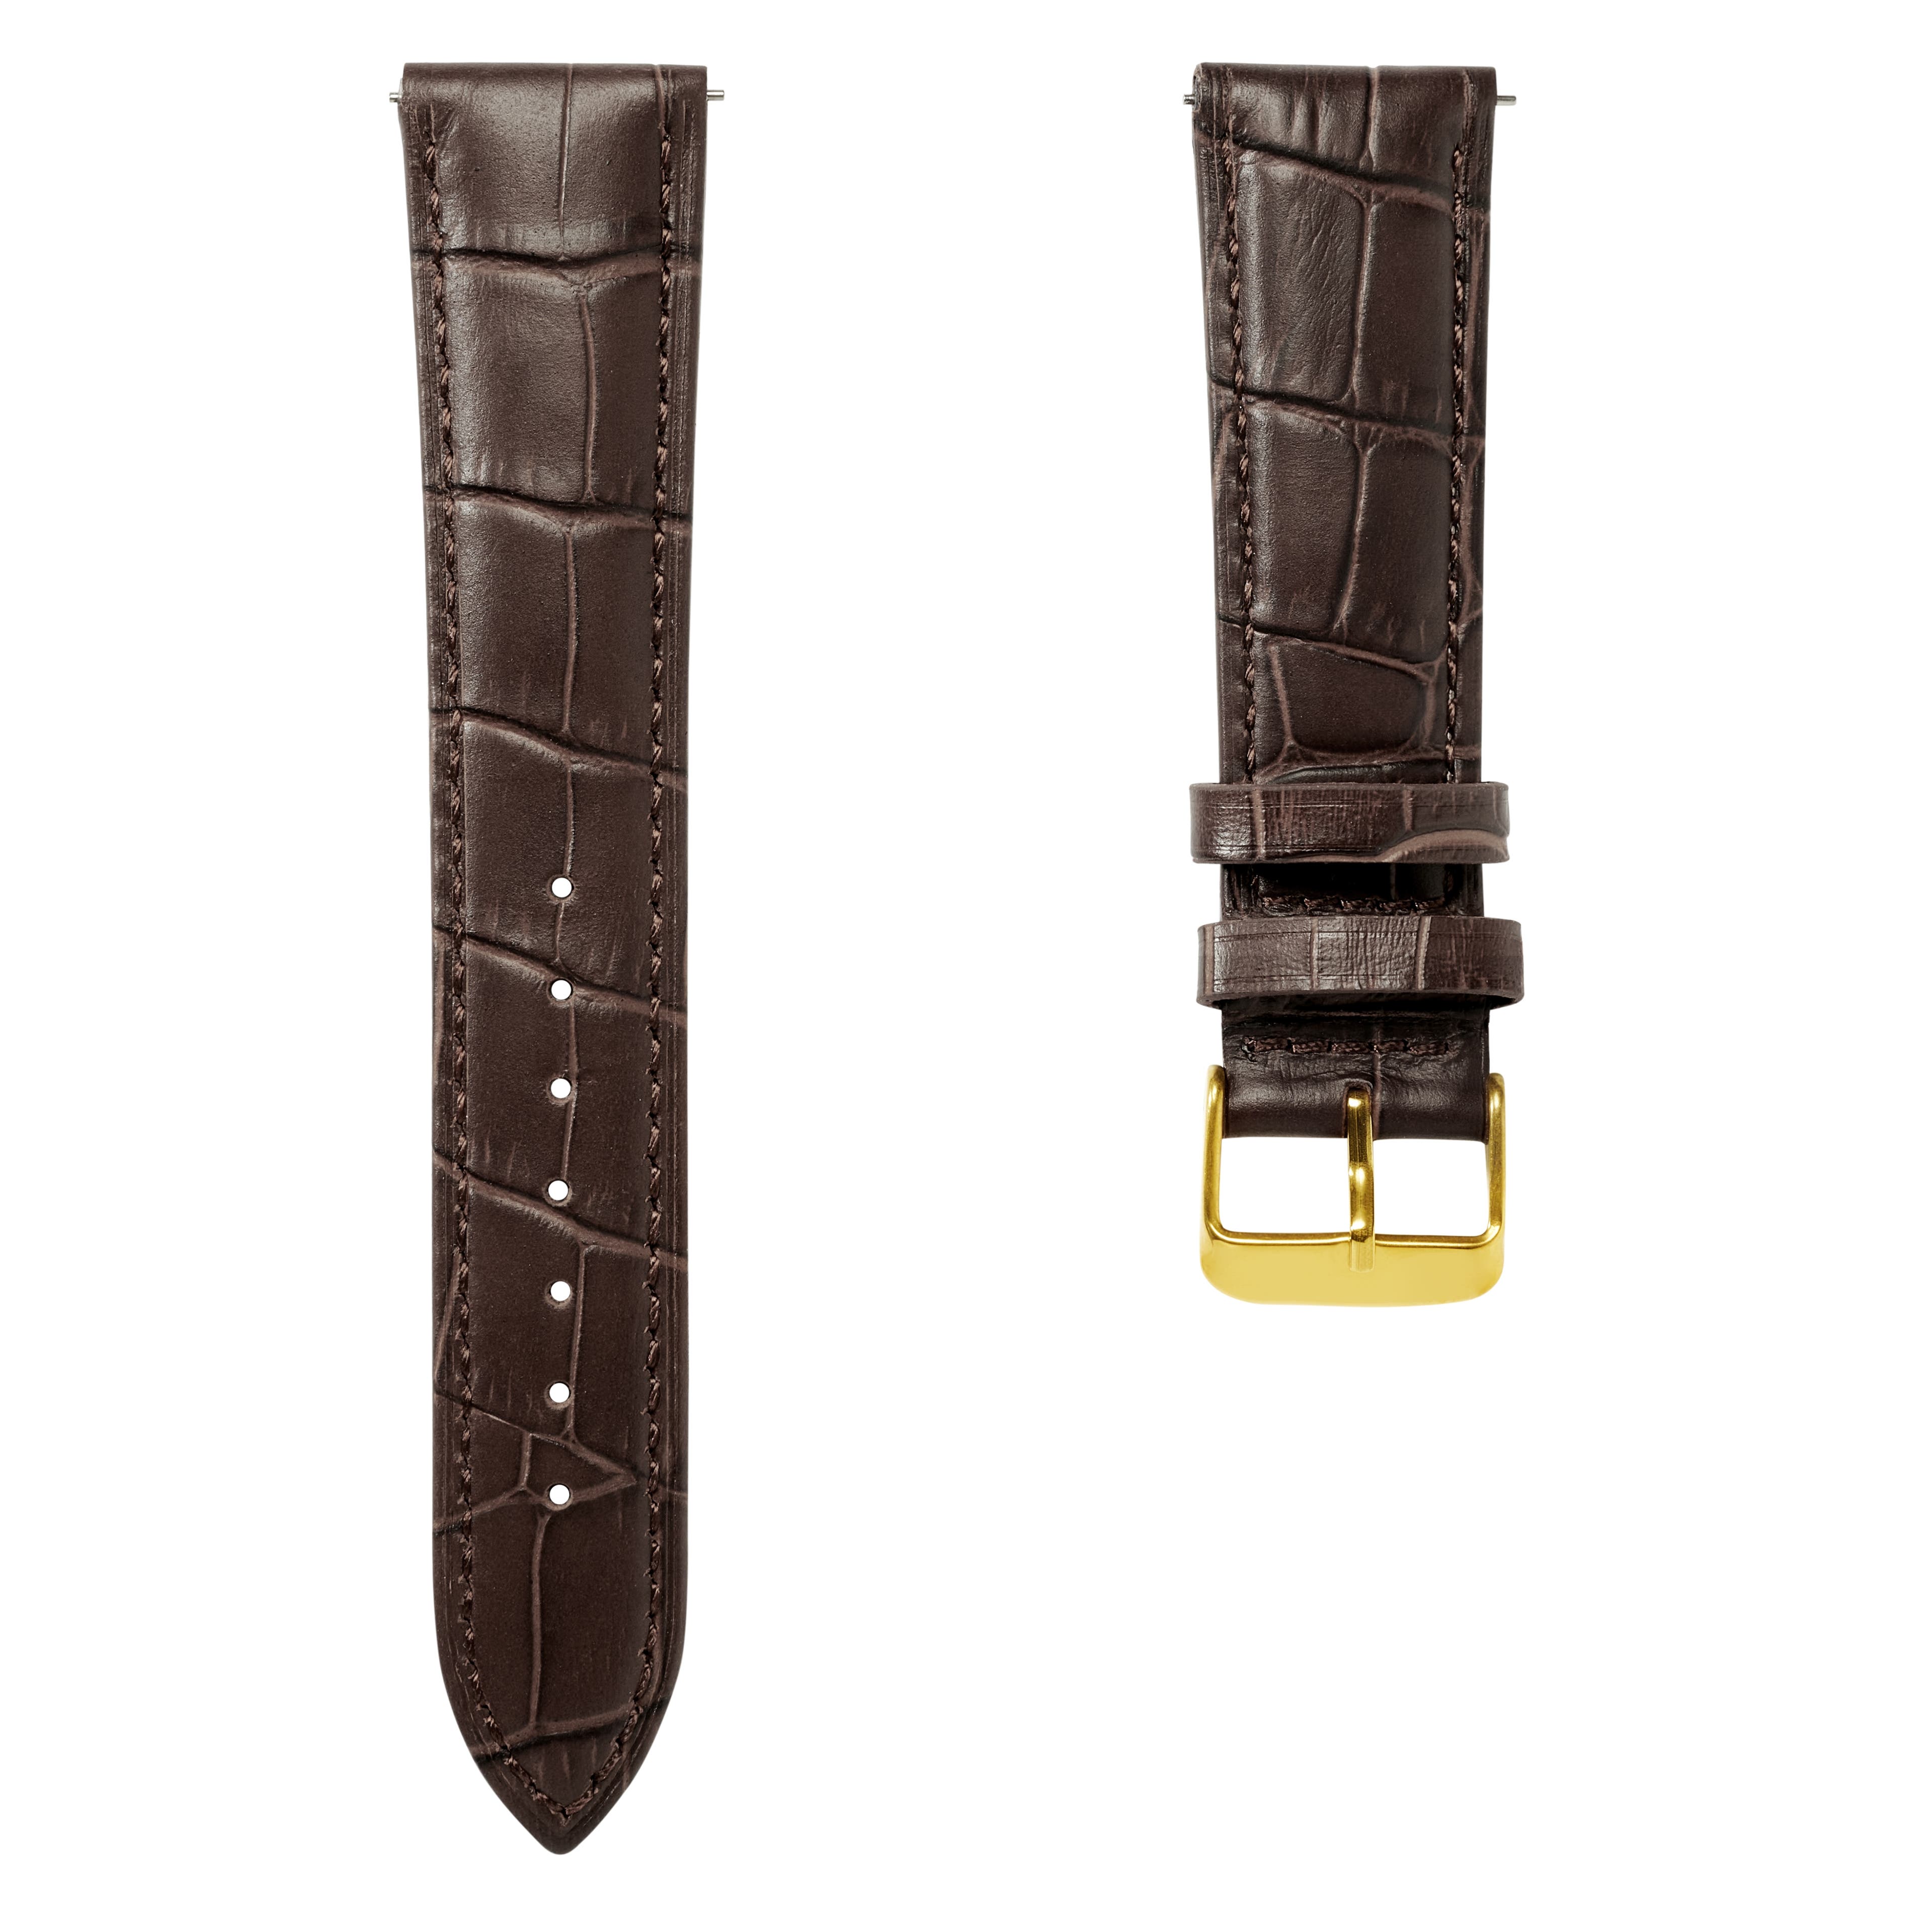 Correa de reloj de cuero marrón oscuro con relieve de cocodrilo de 18 mm y hebilla dorada - De liberación rápida